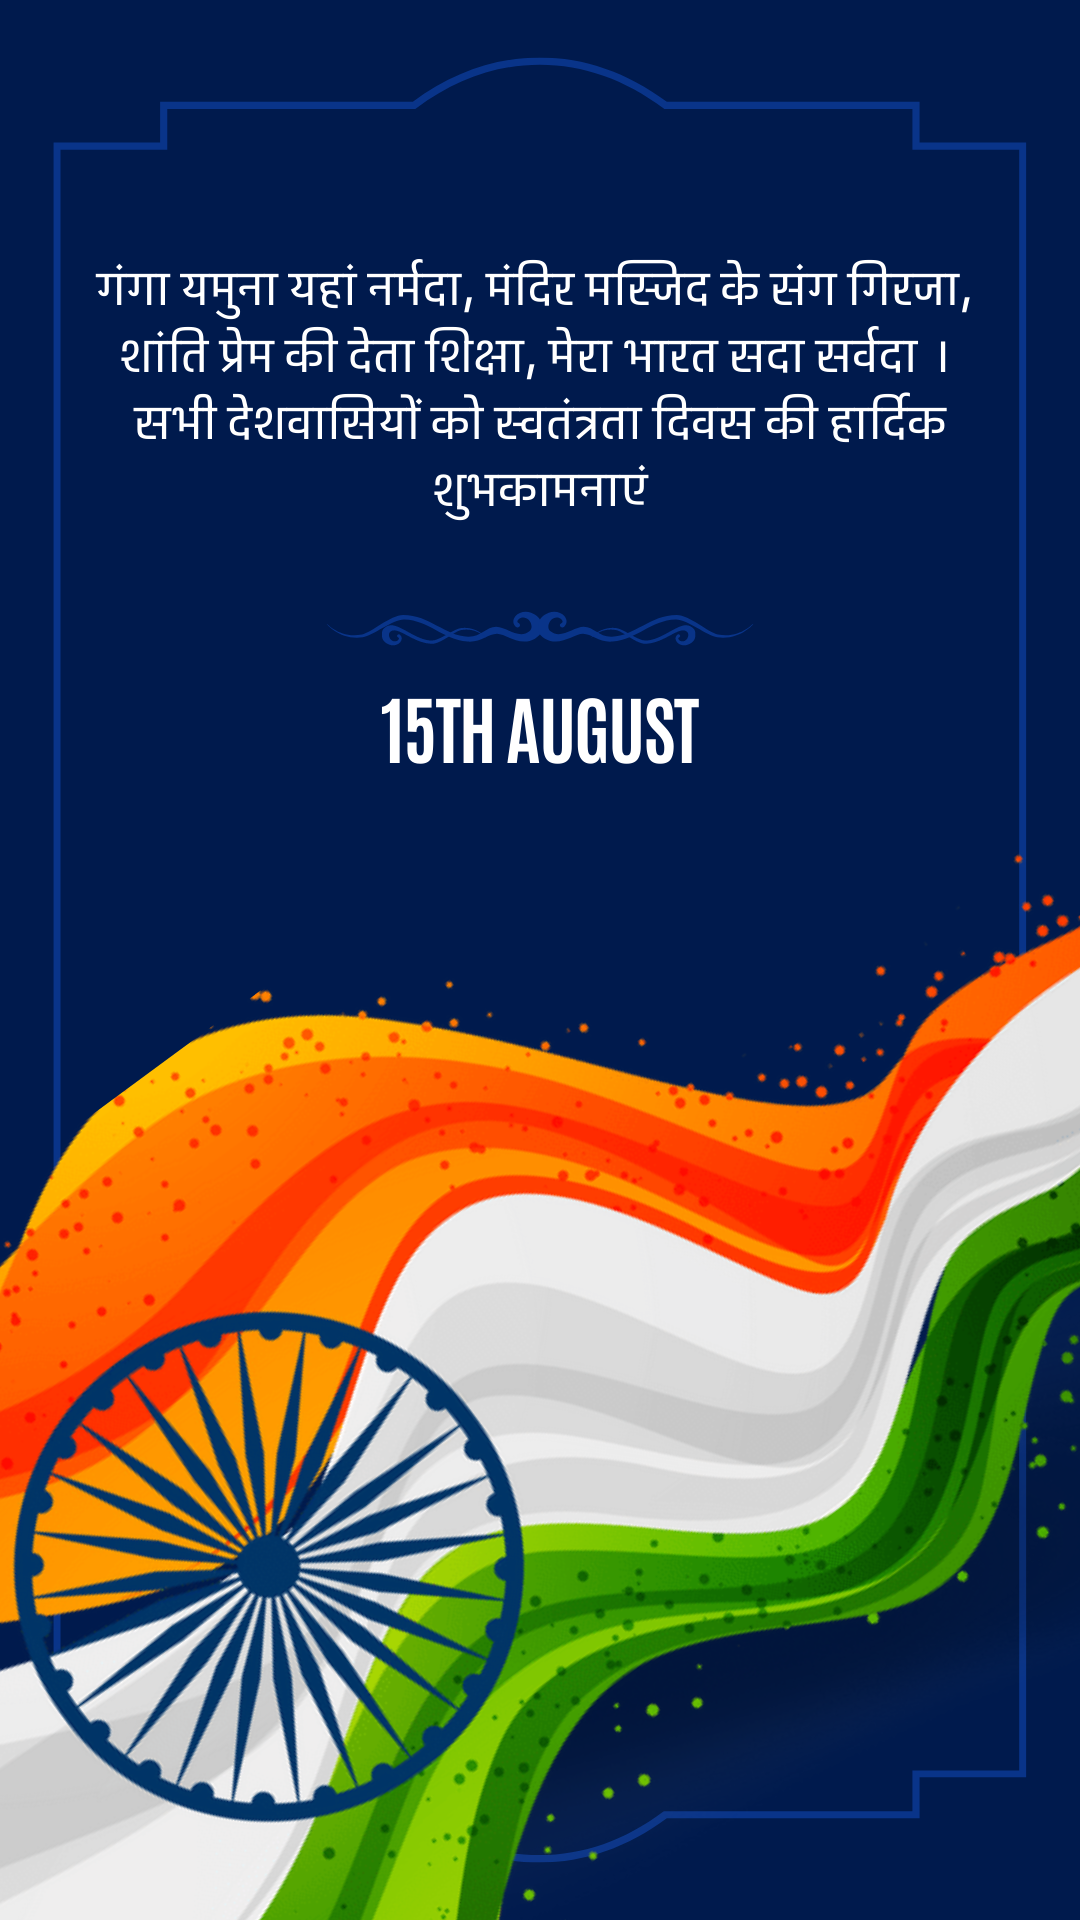 15 August 2022 स्वतंत्रता दिवस शायरी हिंदू मुस्लिम एकता स्वतंत्रता दिवस 2022 की हार्दिक शुभकामनाएं Images